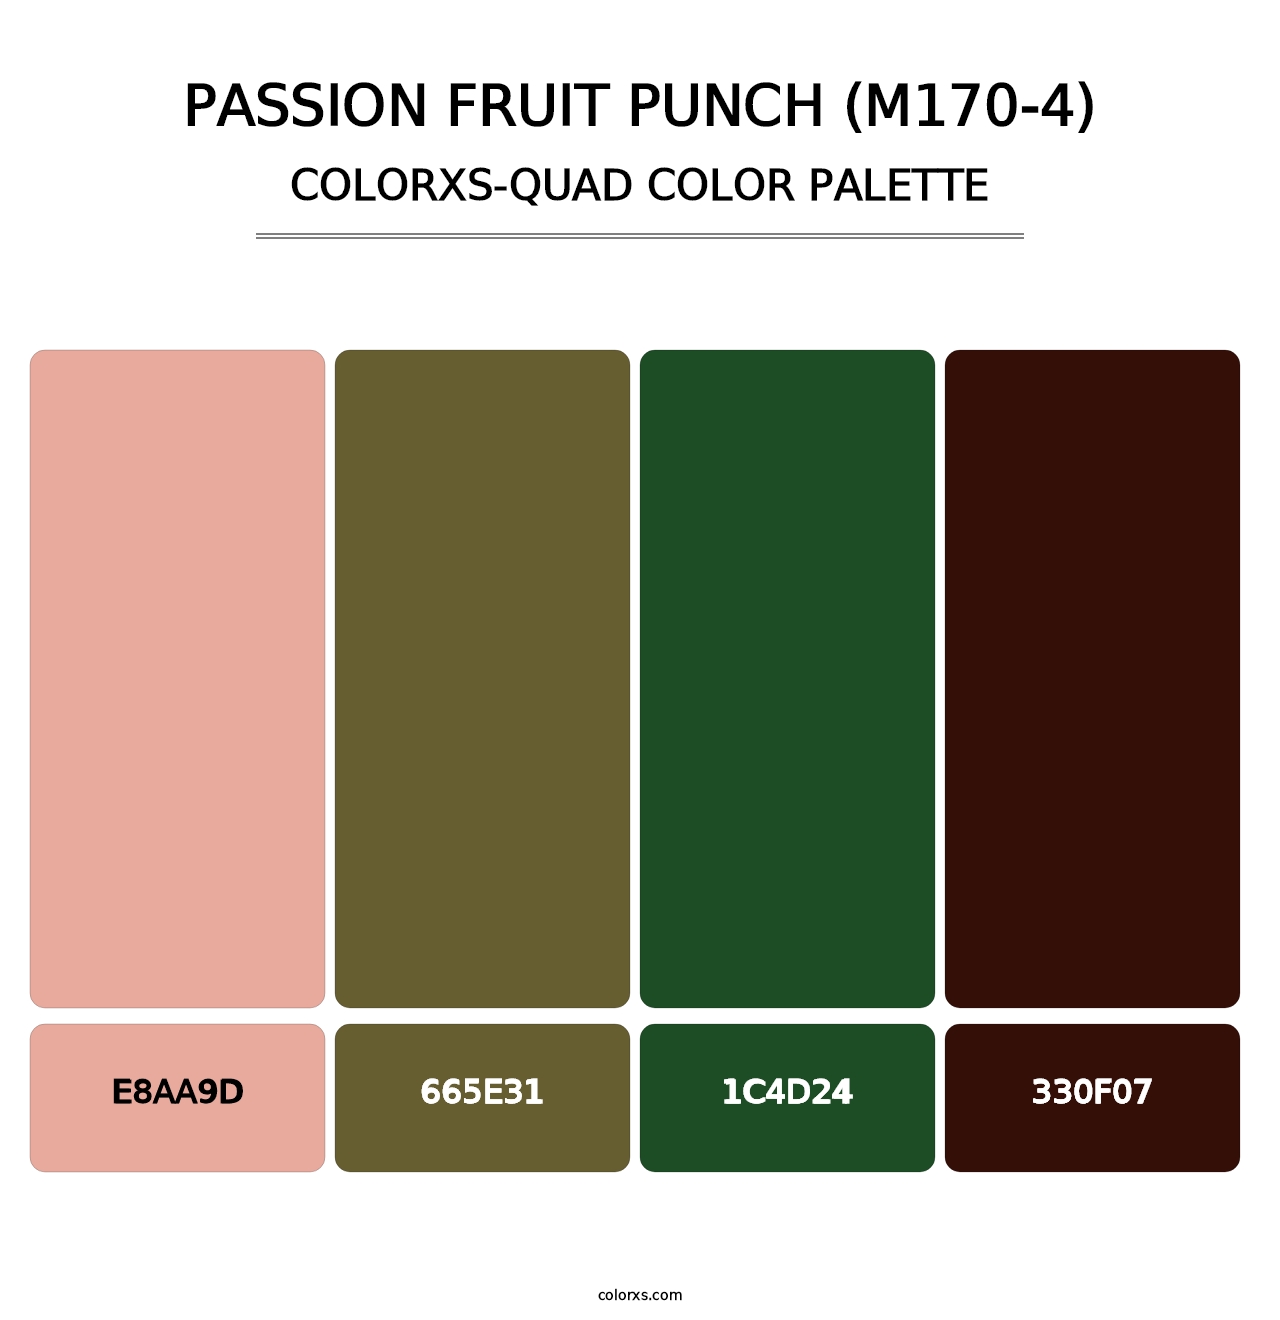 Passion Fruit Punch (M170-4) - Colorxs Quad Palette